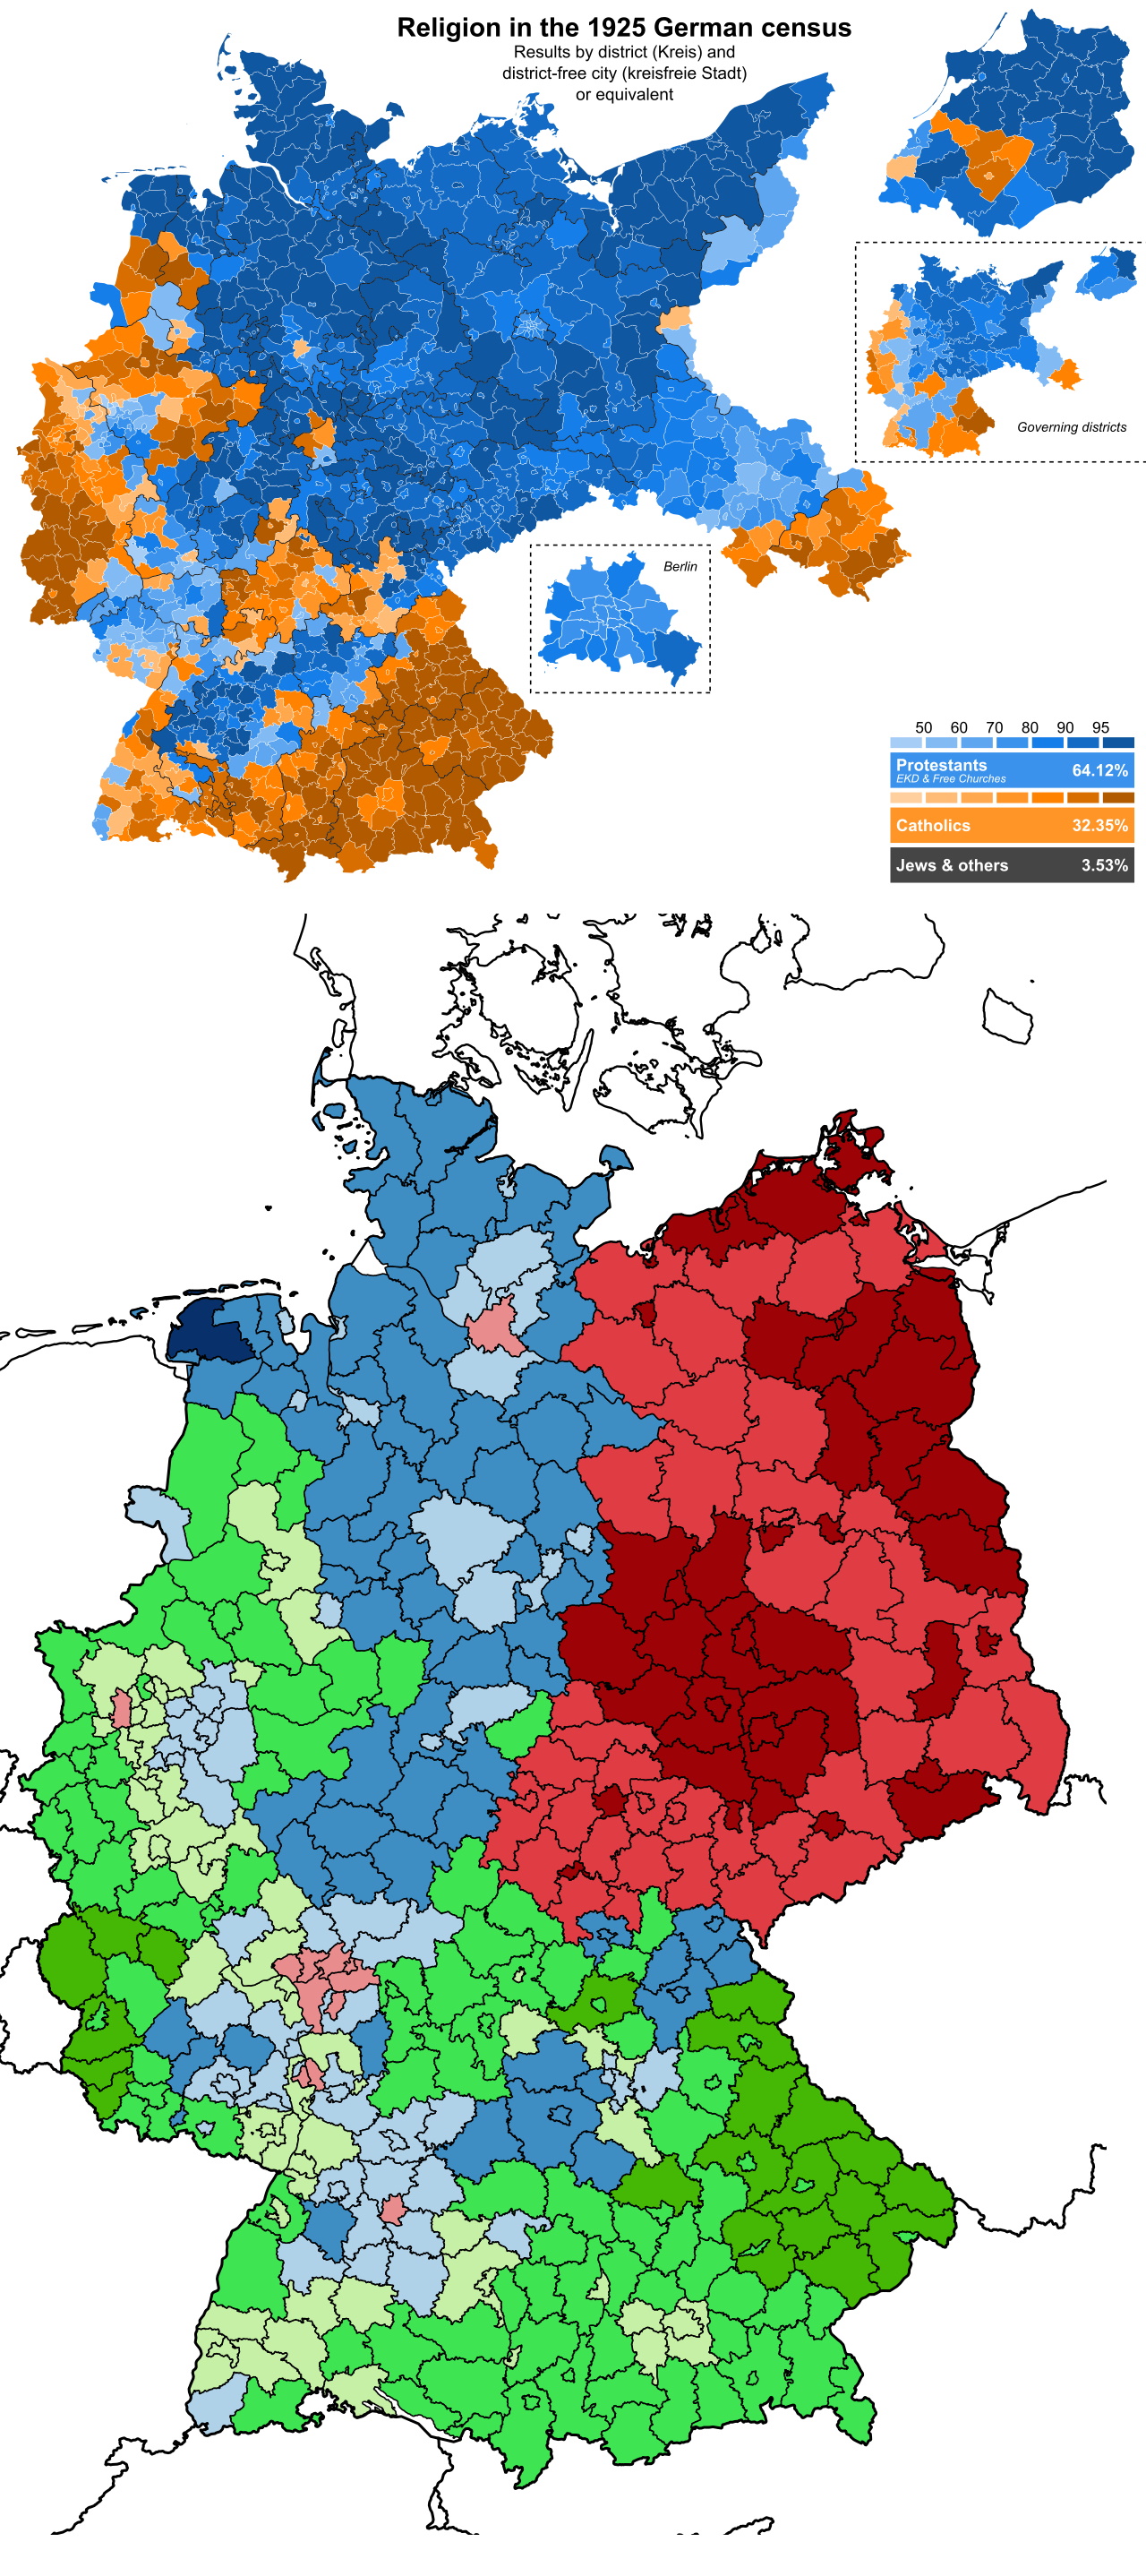 Religia w Republice Weimarskiej (1925), a religia we współczesnych Niemczech